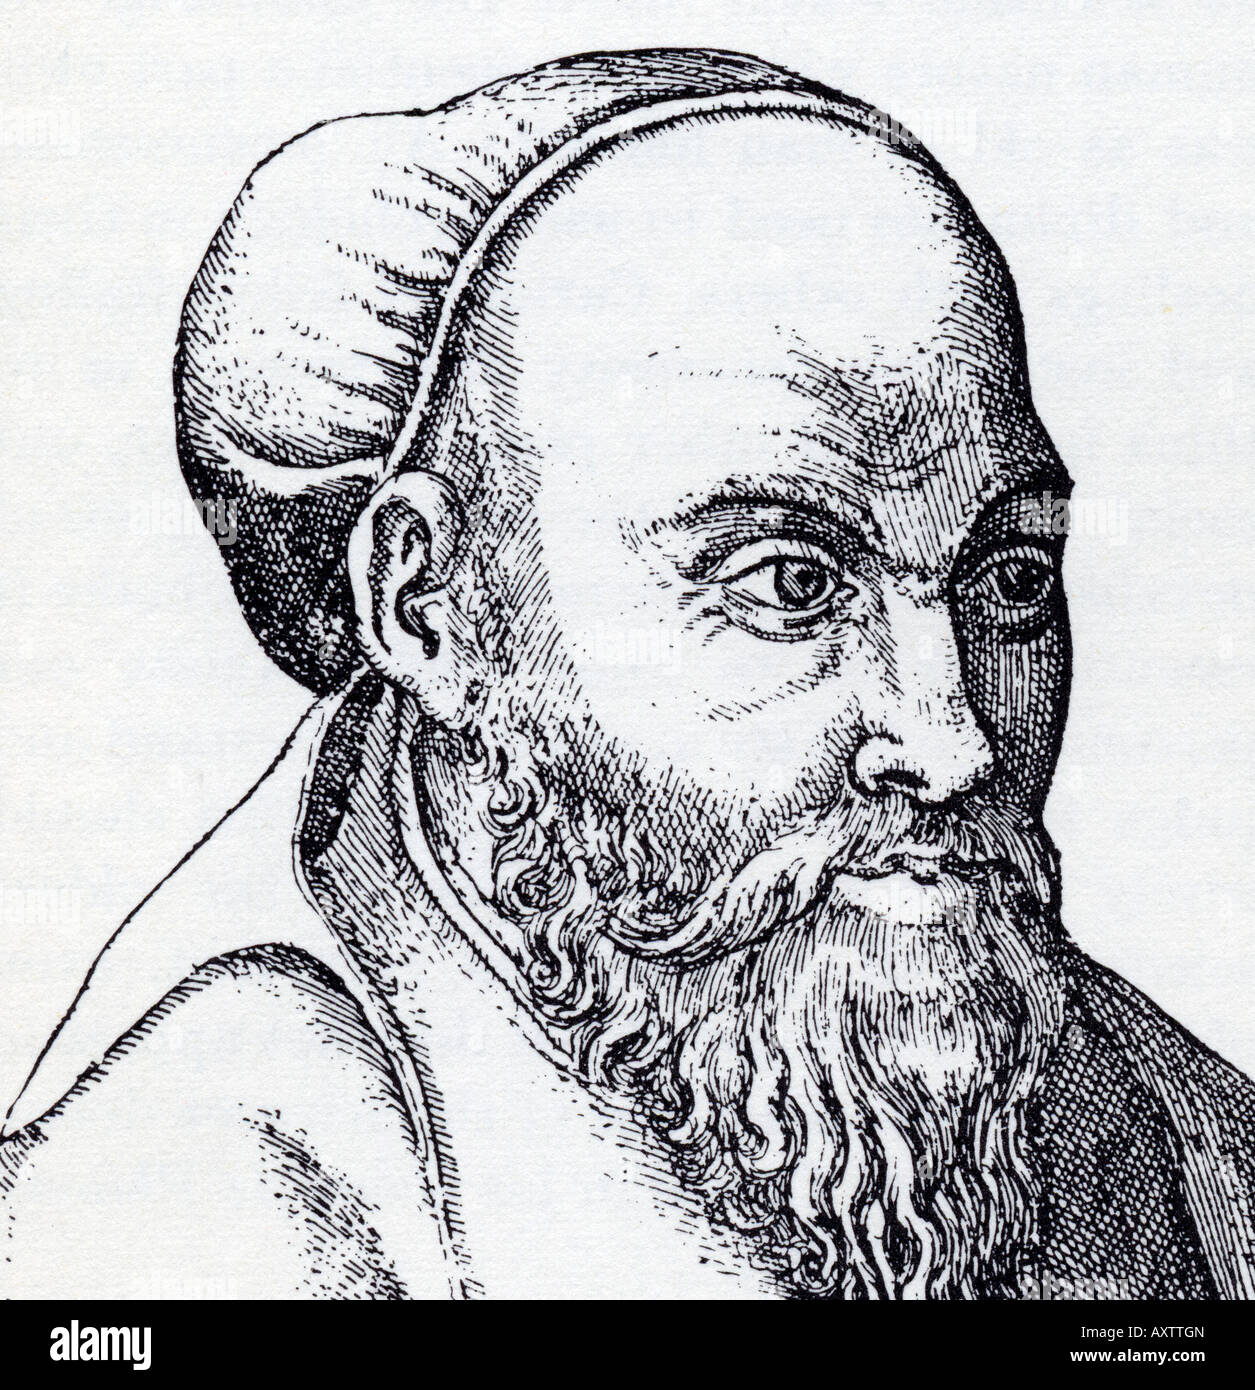 Pitágoras de grabado del siglo XVII, el filósofo griego, místico y matemático Foto de stock